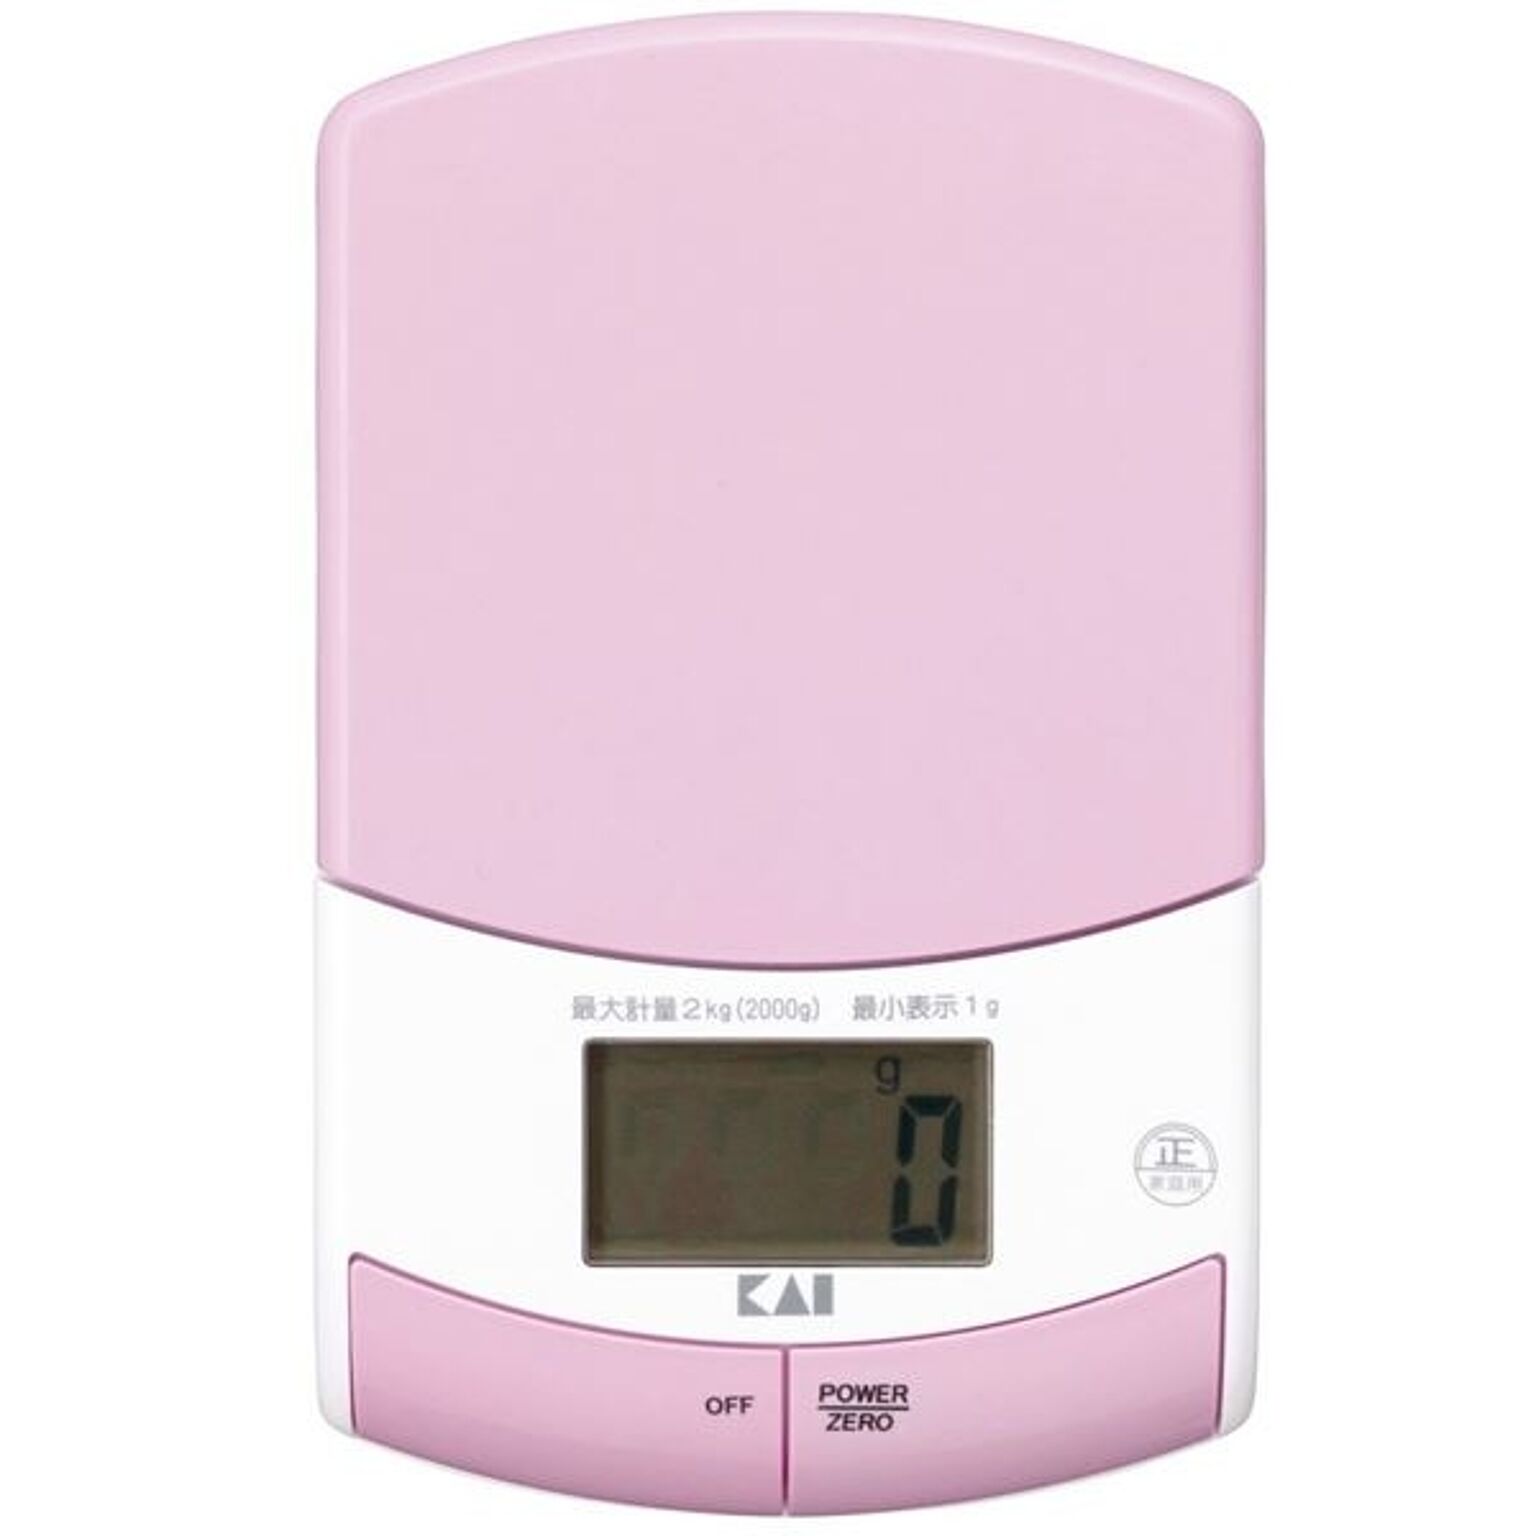 薄型クッキングスケール/計量器 デジタル コンパクト 2kg計量 ピンク 『貝印』